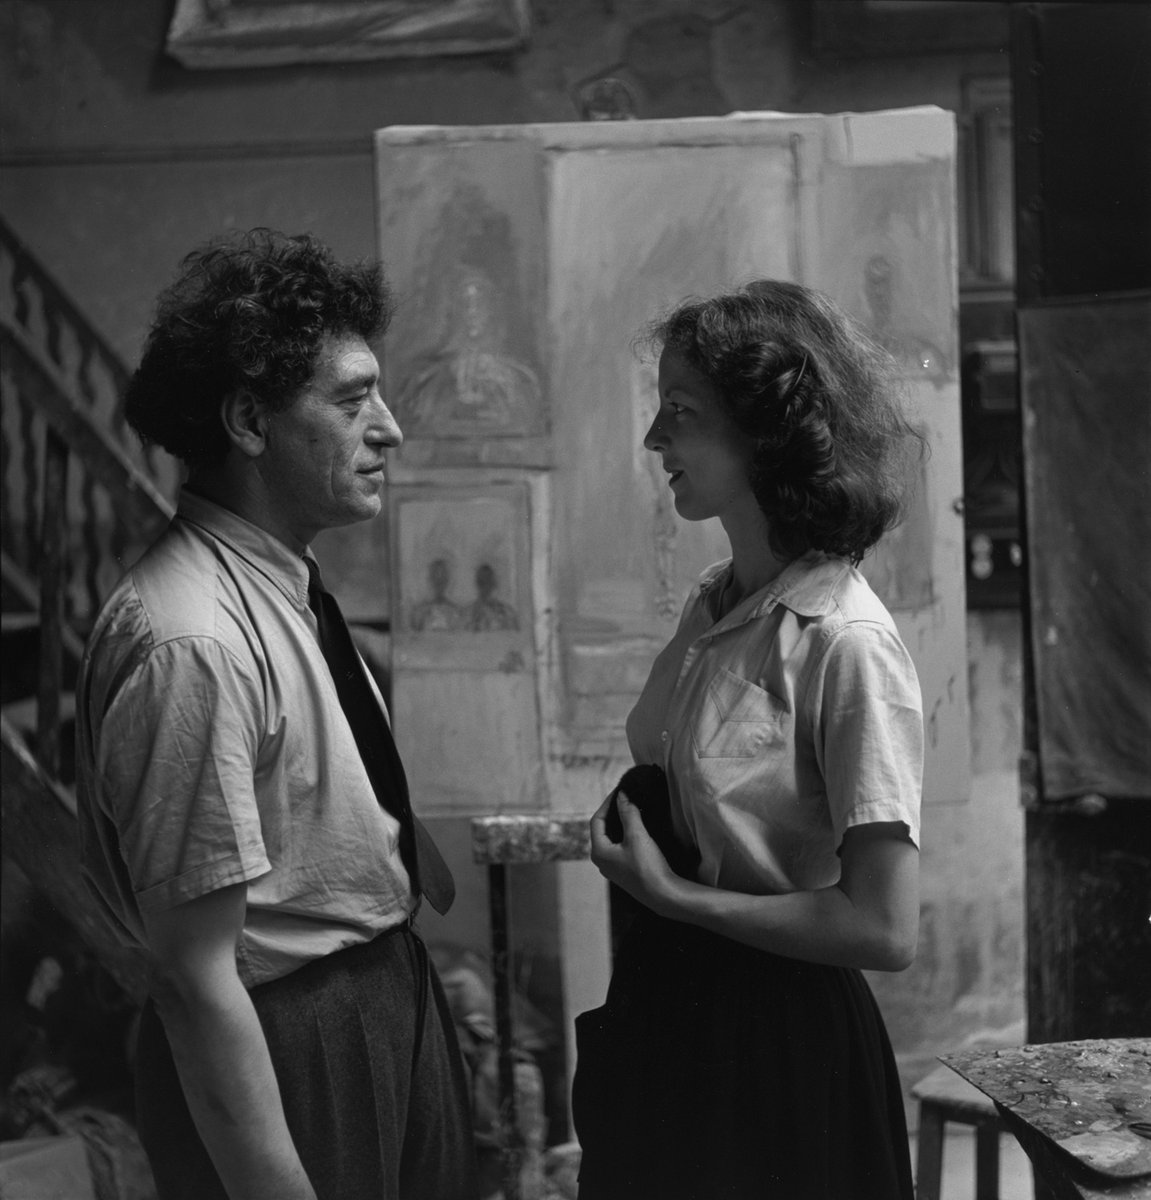 Annette e Alberto Giacometti in atelier nel 1951. #Giacometti #Arm #AlbertoGiacometti #AnnetteArm